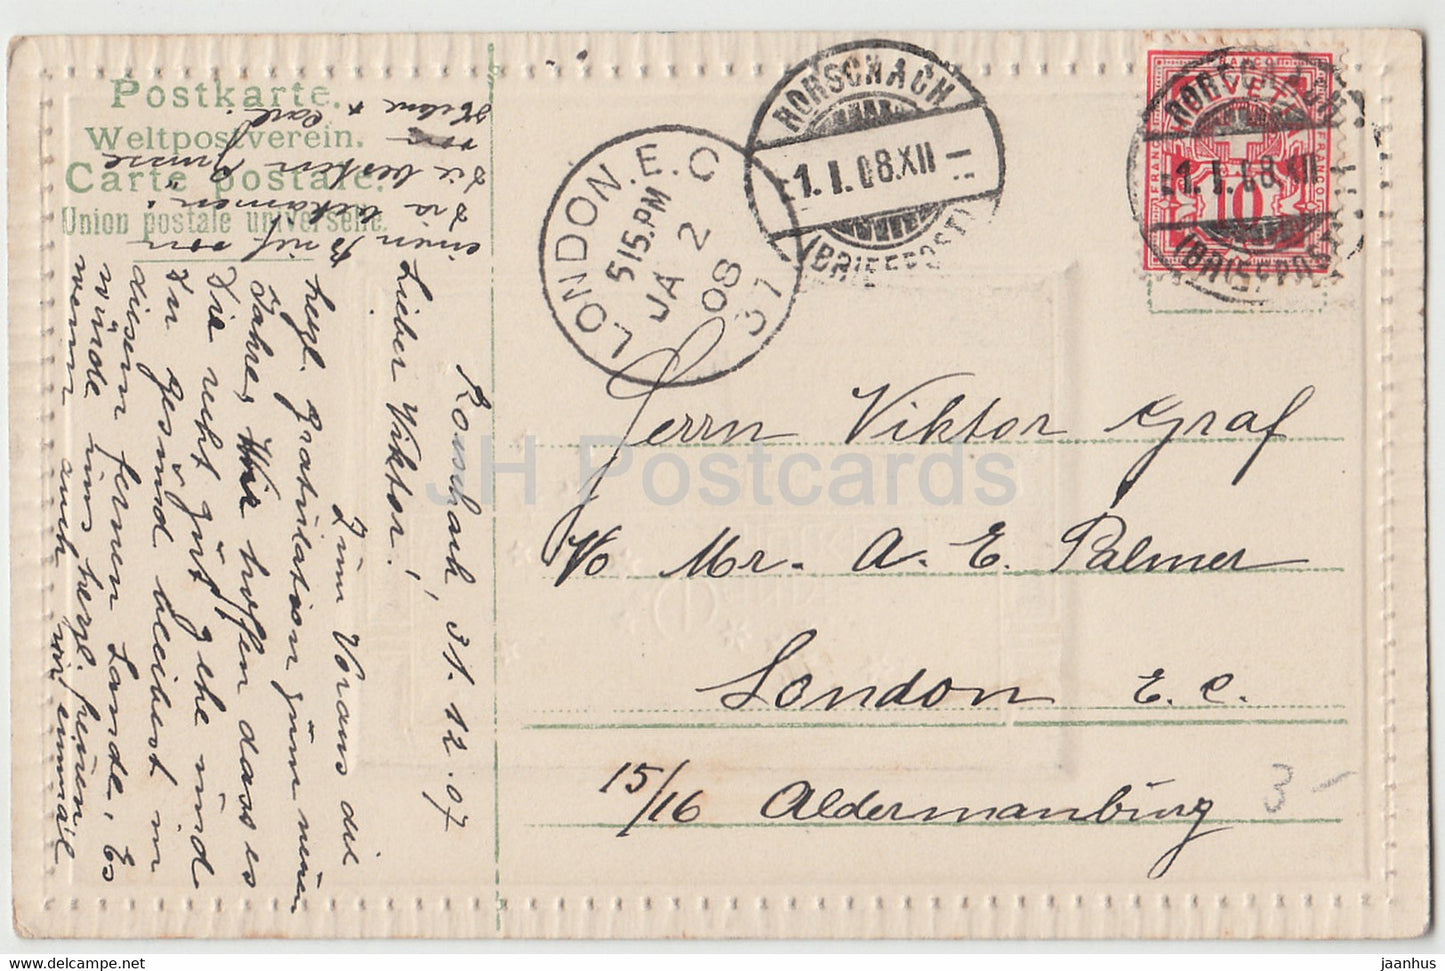 Carte de vœux du Nouvel An - Wandle Glucklich unter den Sternen de Neues Jahres - carte postale ancienne - 1908 - Allemagne - utilisé